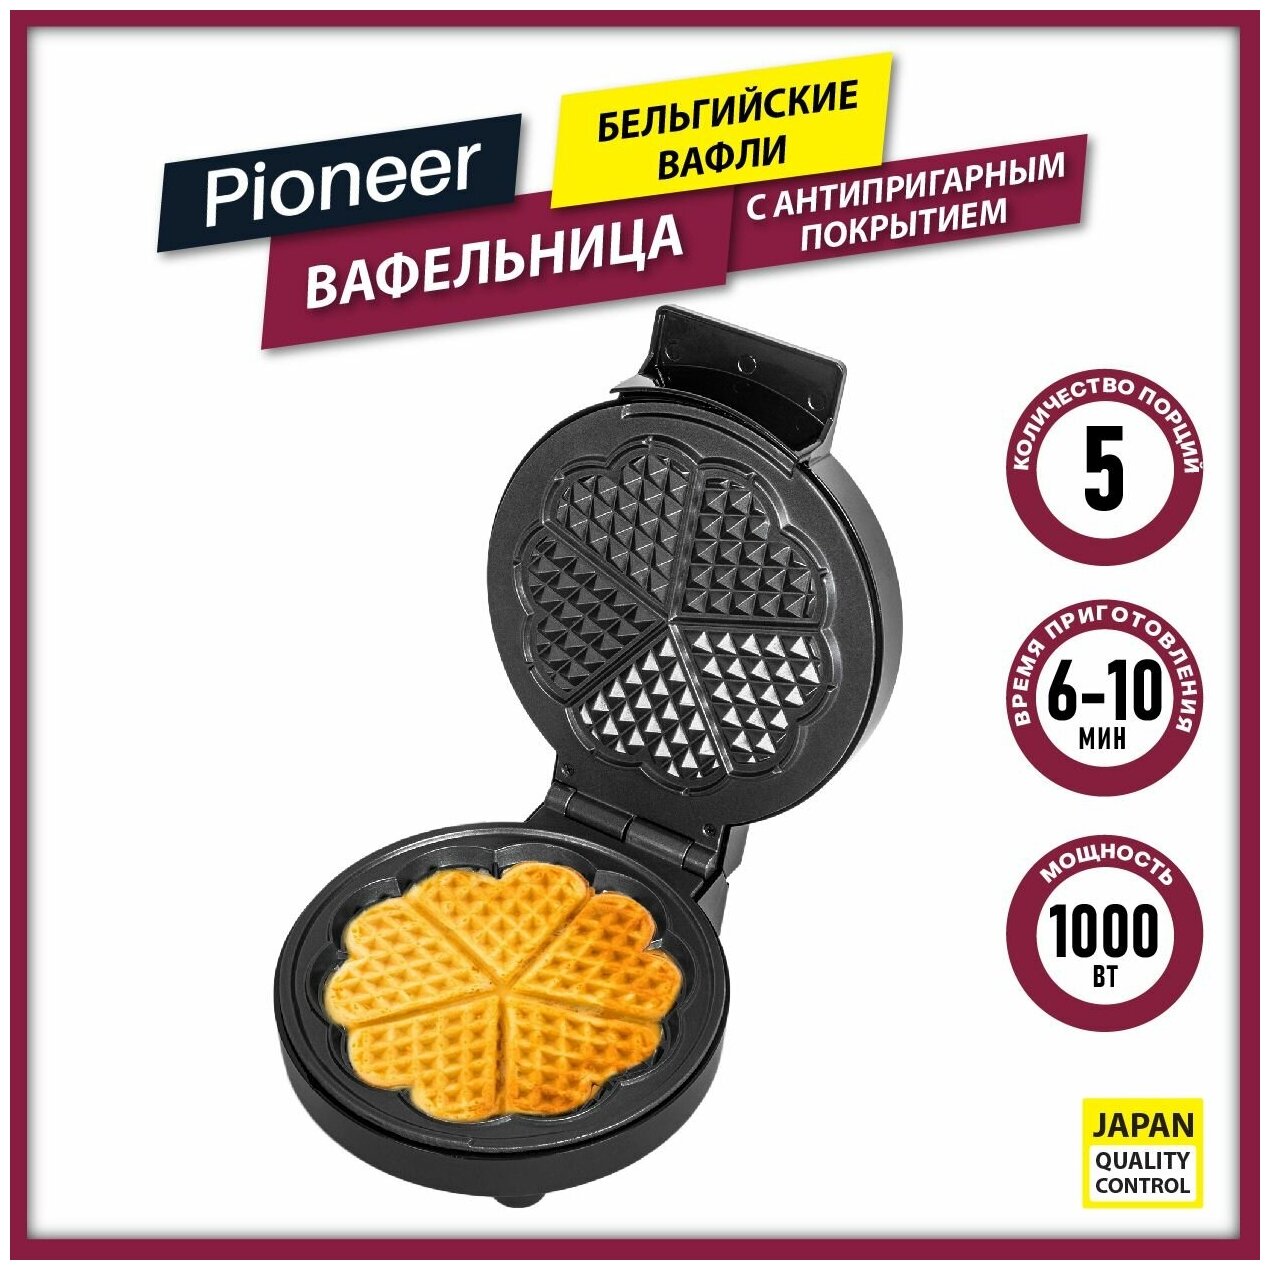 Вафельница Pioneer SM304D для скандинавских вафель, равномерный регулируемый нагрев, индикация работы, 1000 Вт